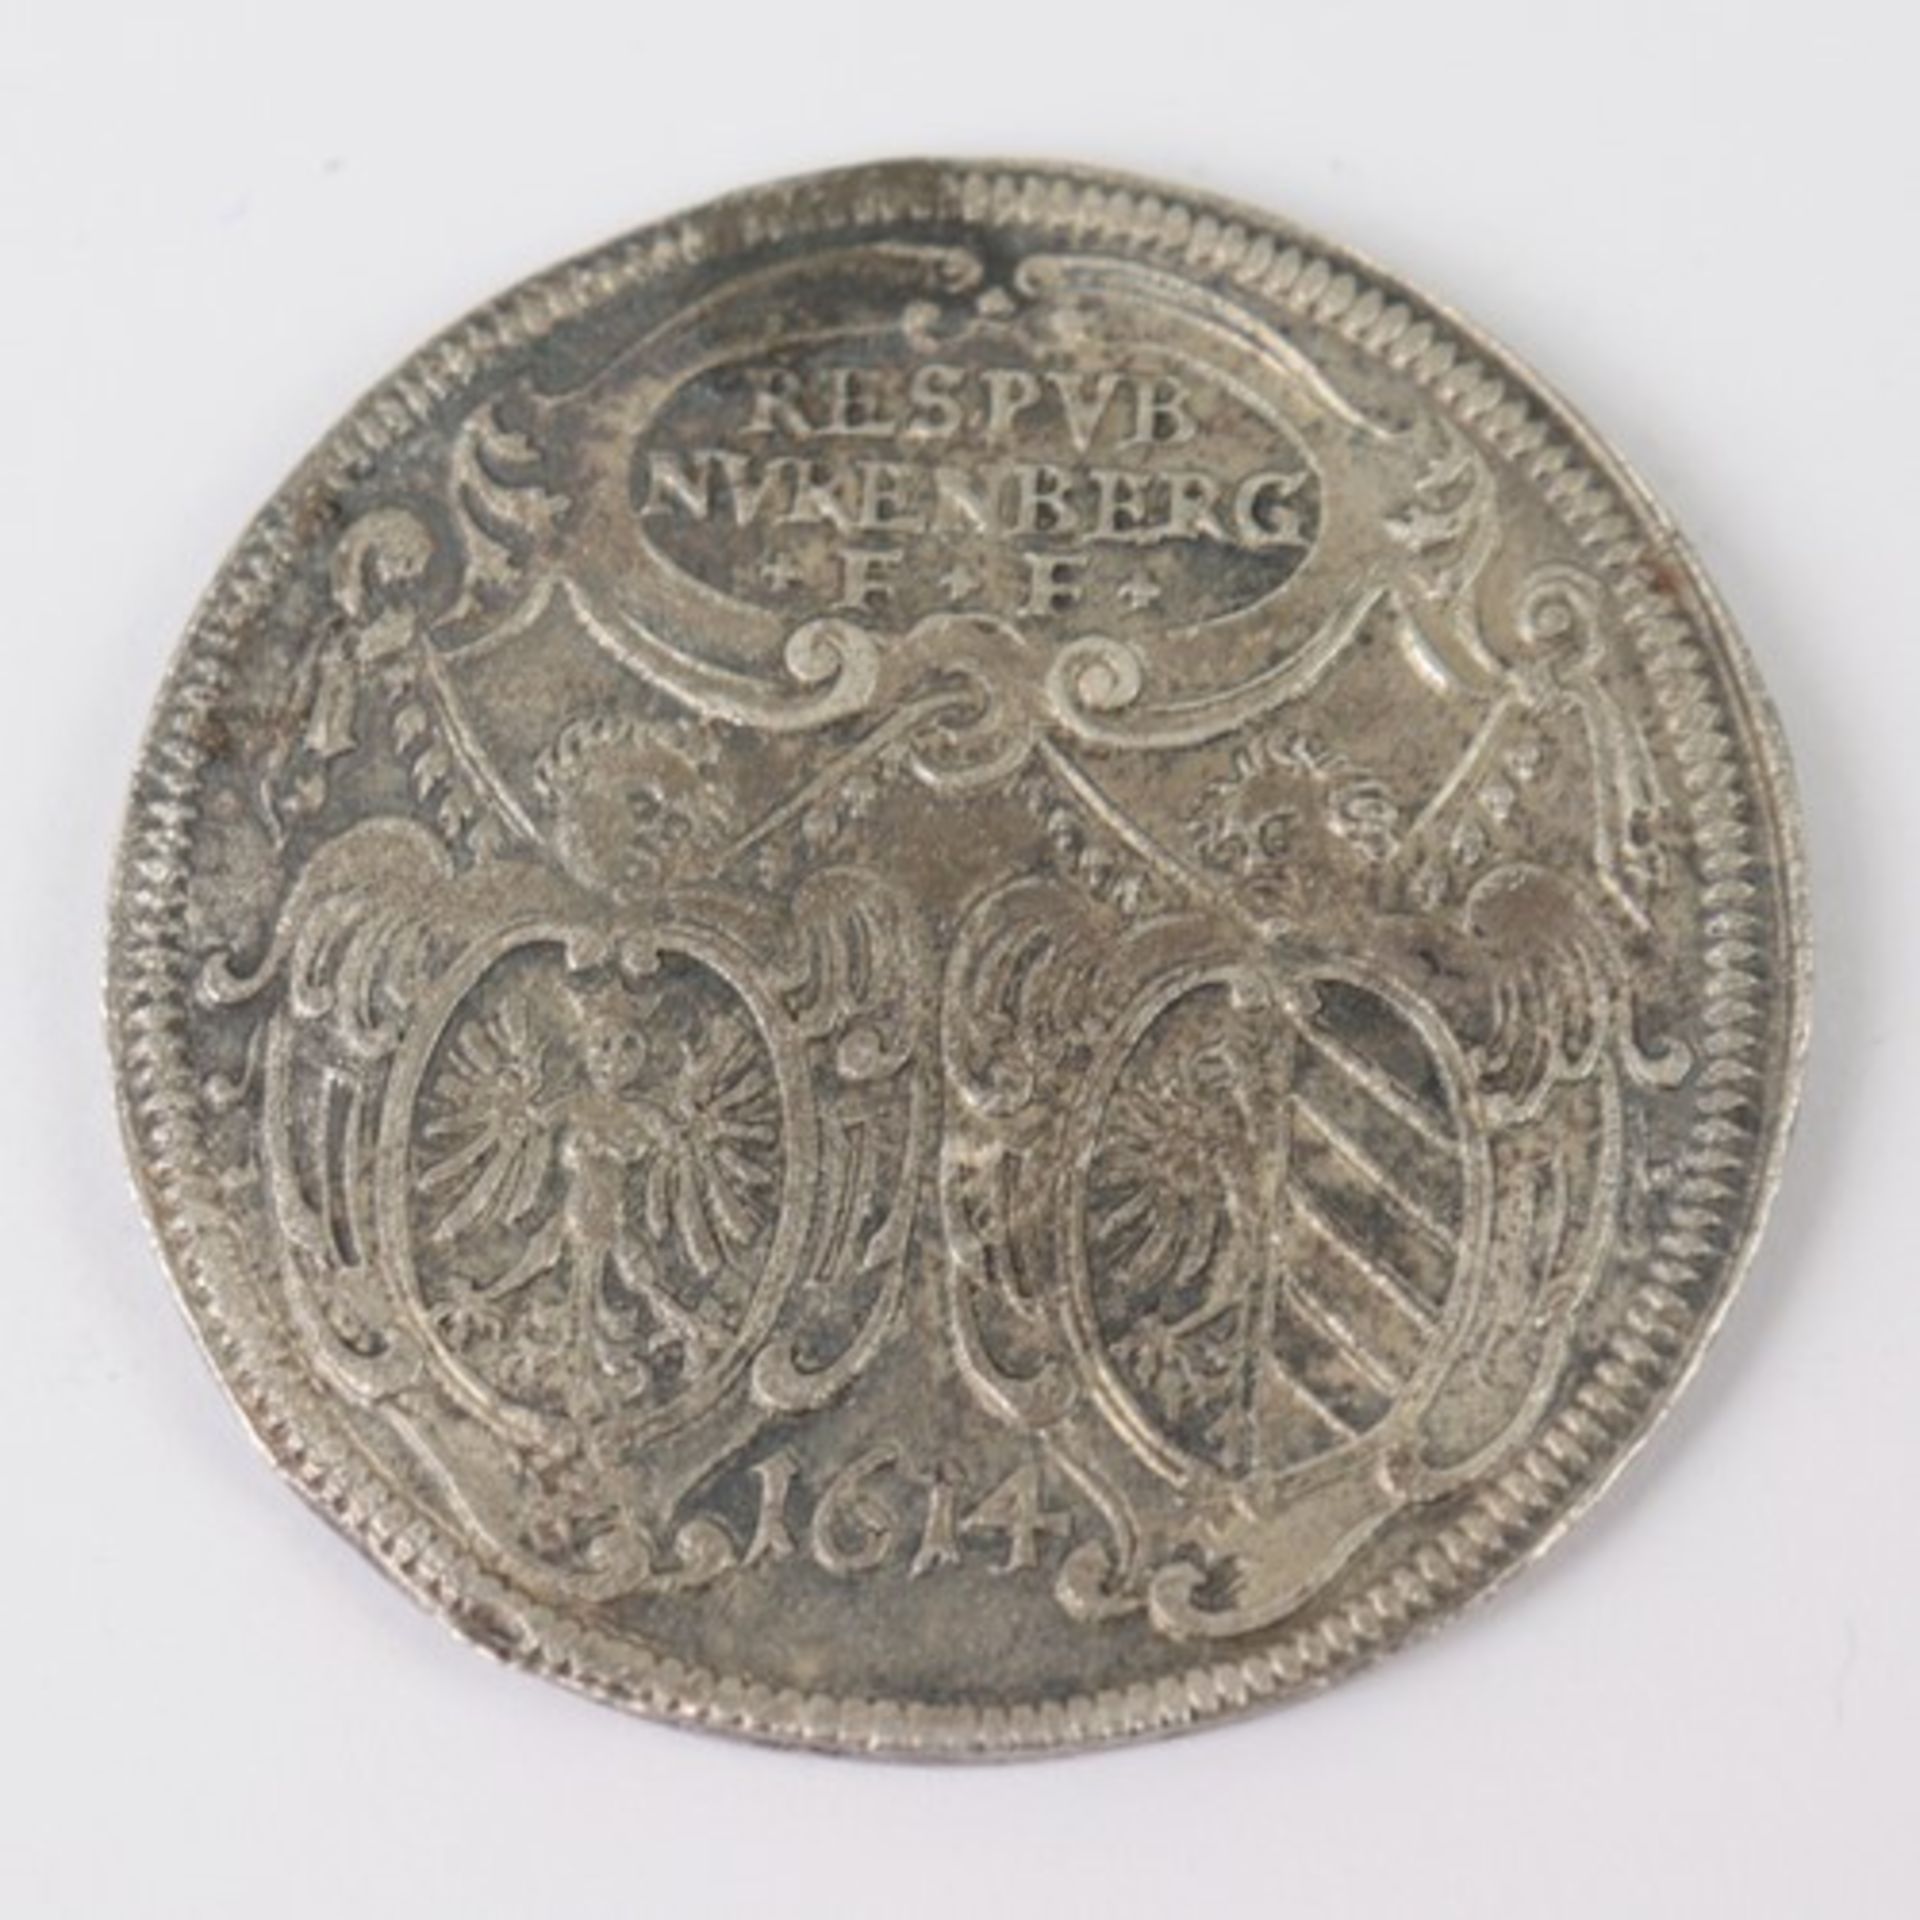 NürnbergSilbermünze, Guldentaler zu 60 Kreuzer mit Titel Matthias 1614 Nürnberg, bez. RESPVB /